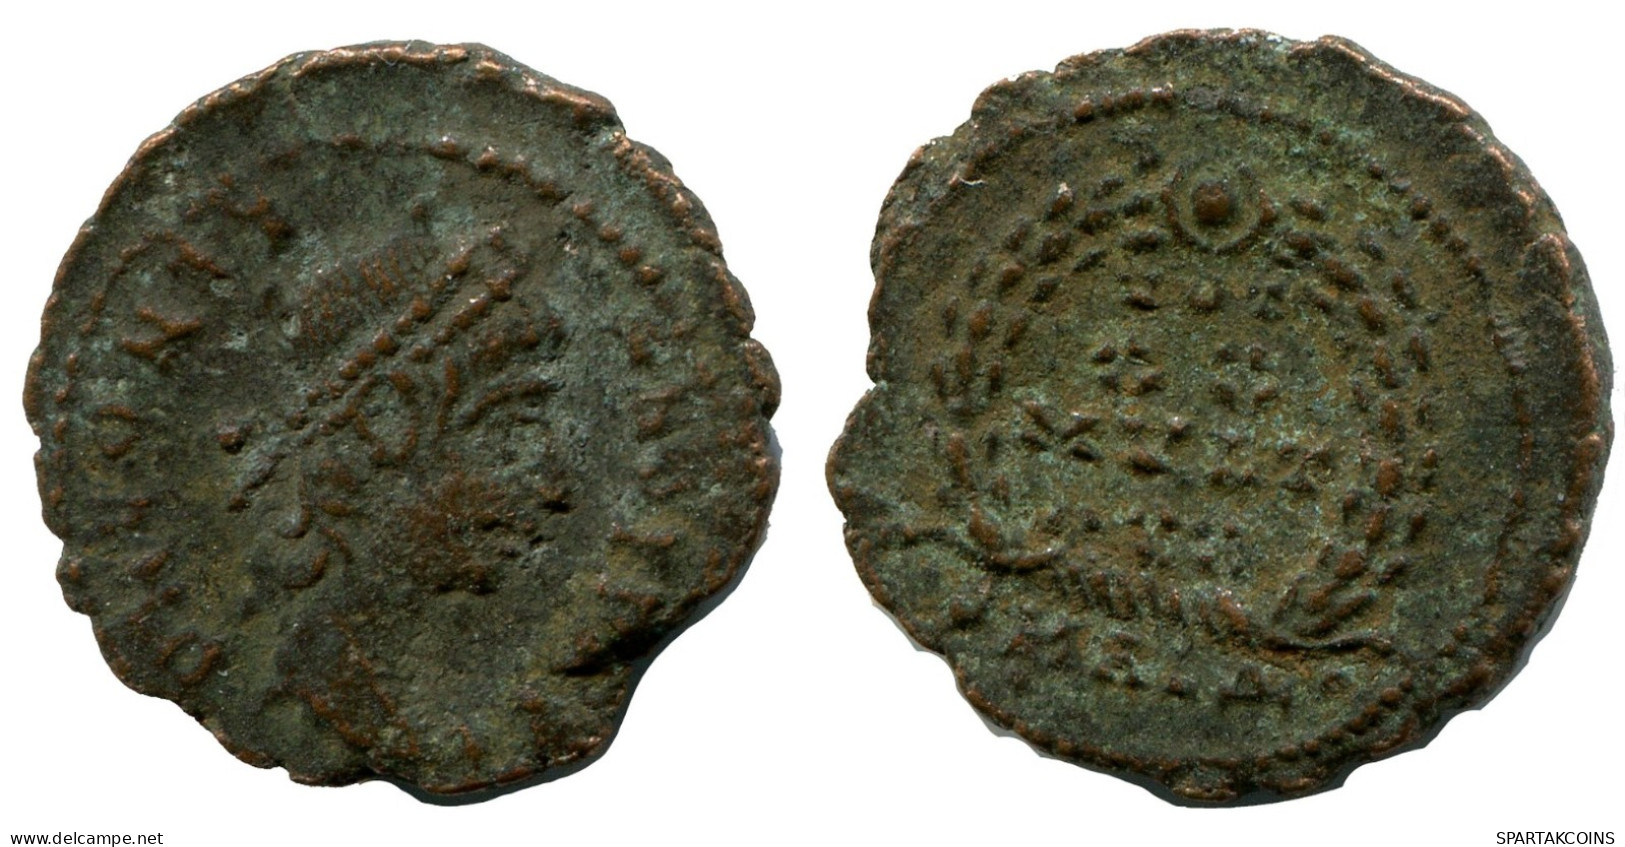 CONSTANTIUS II MINTED IN ALEKSANDRIA FOUND IN IHNASYAH HOARD #ANC10500.14.D.A - L'Empire Chrétien (307 à 363)